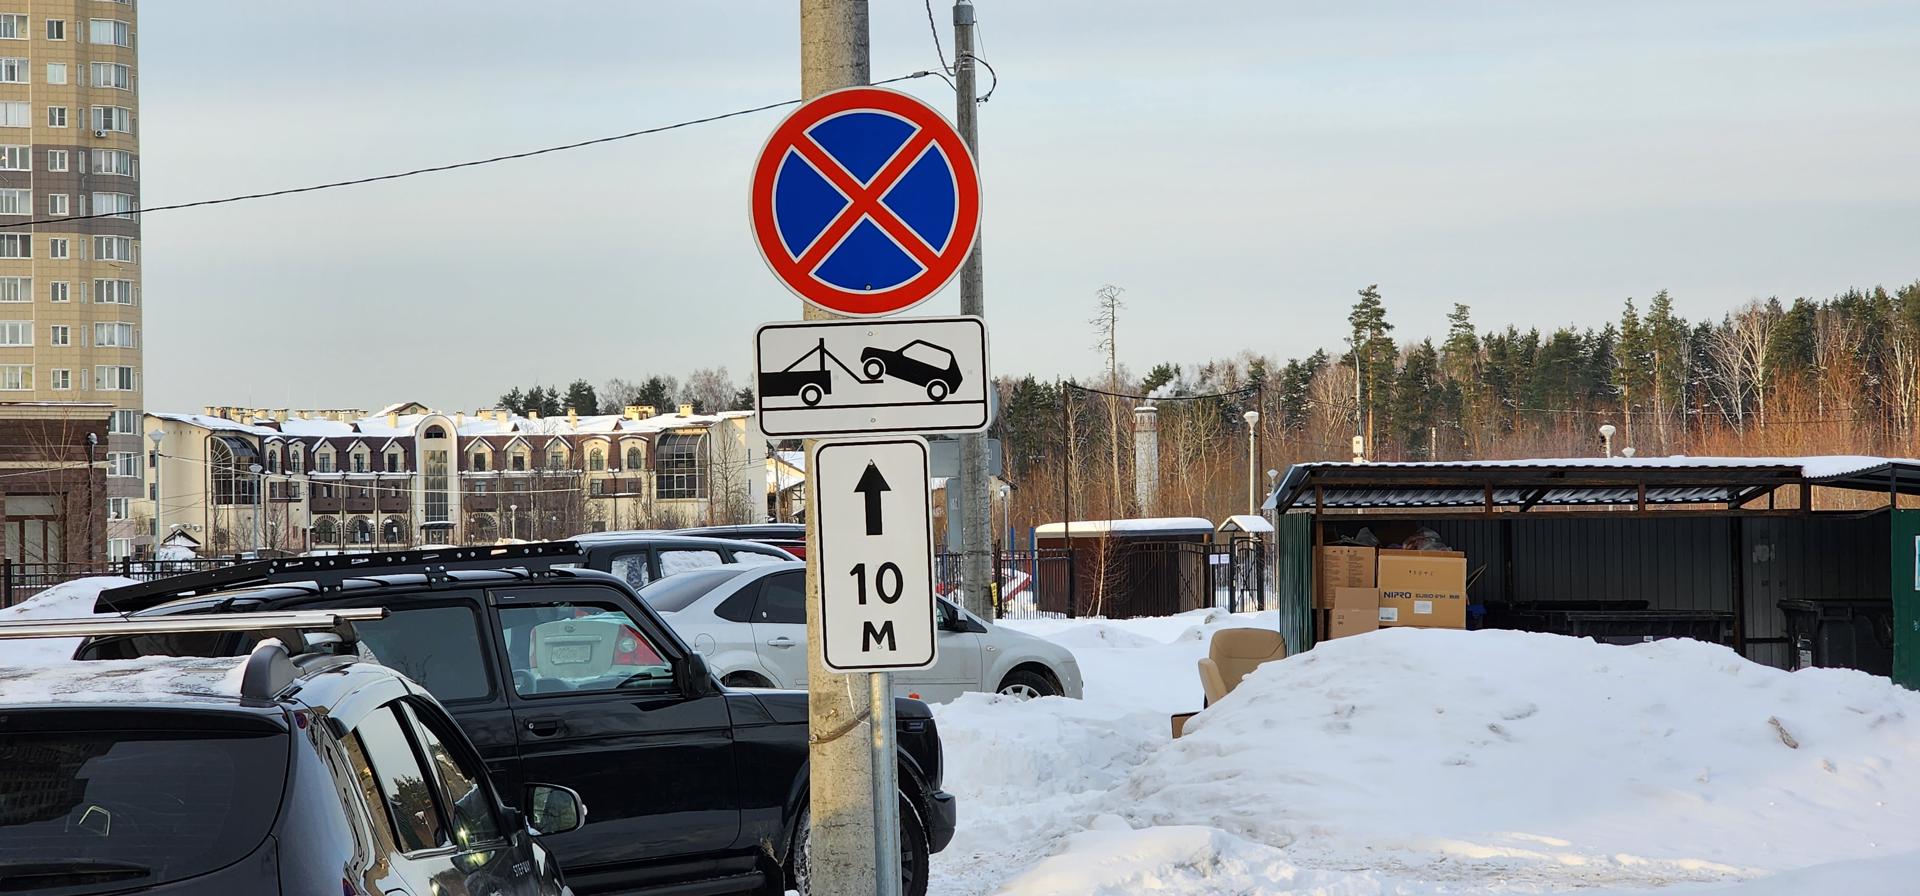 Во дворе дома №22 на Северном шоссе в городе Раменское установили знак, запрещающий парковку.